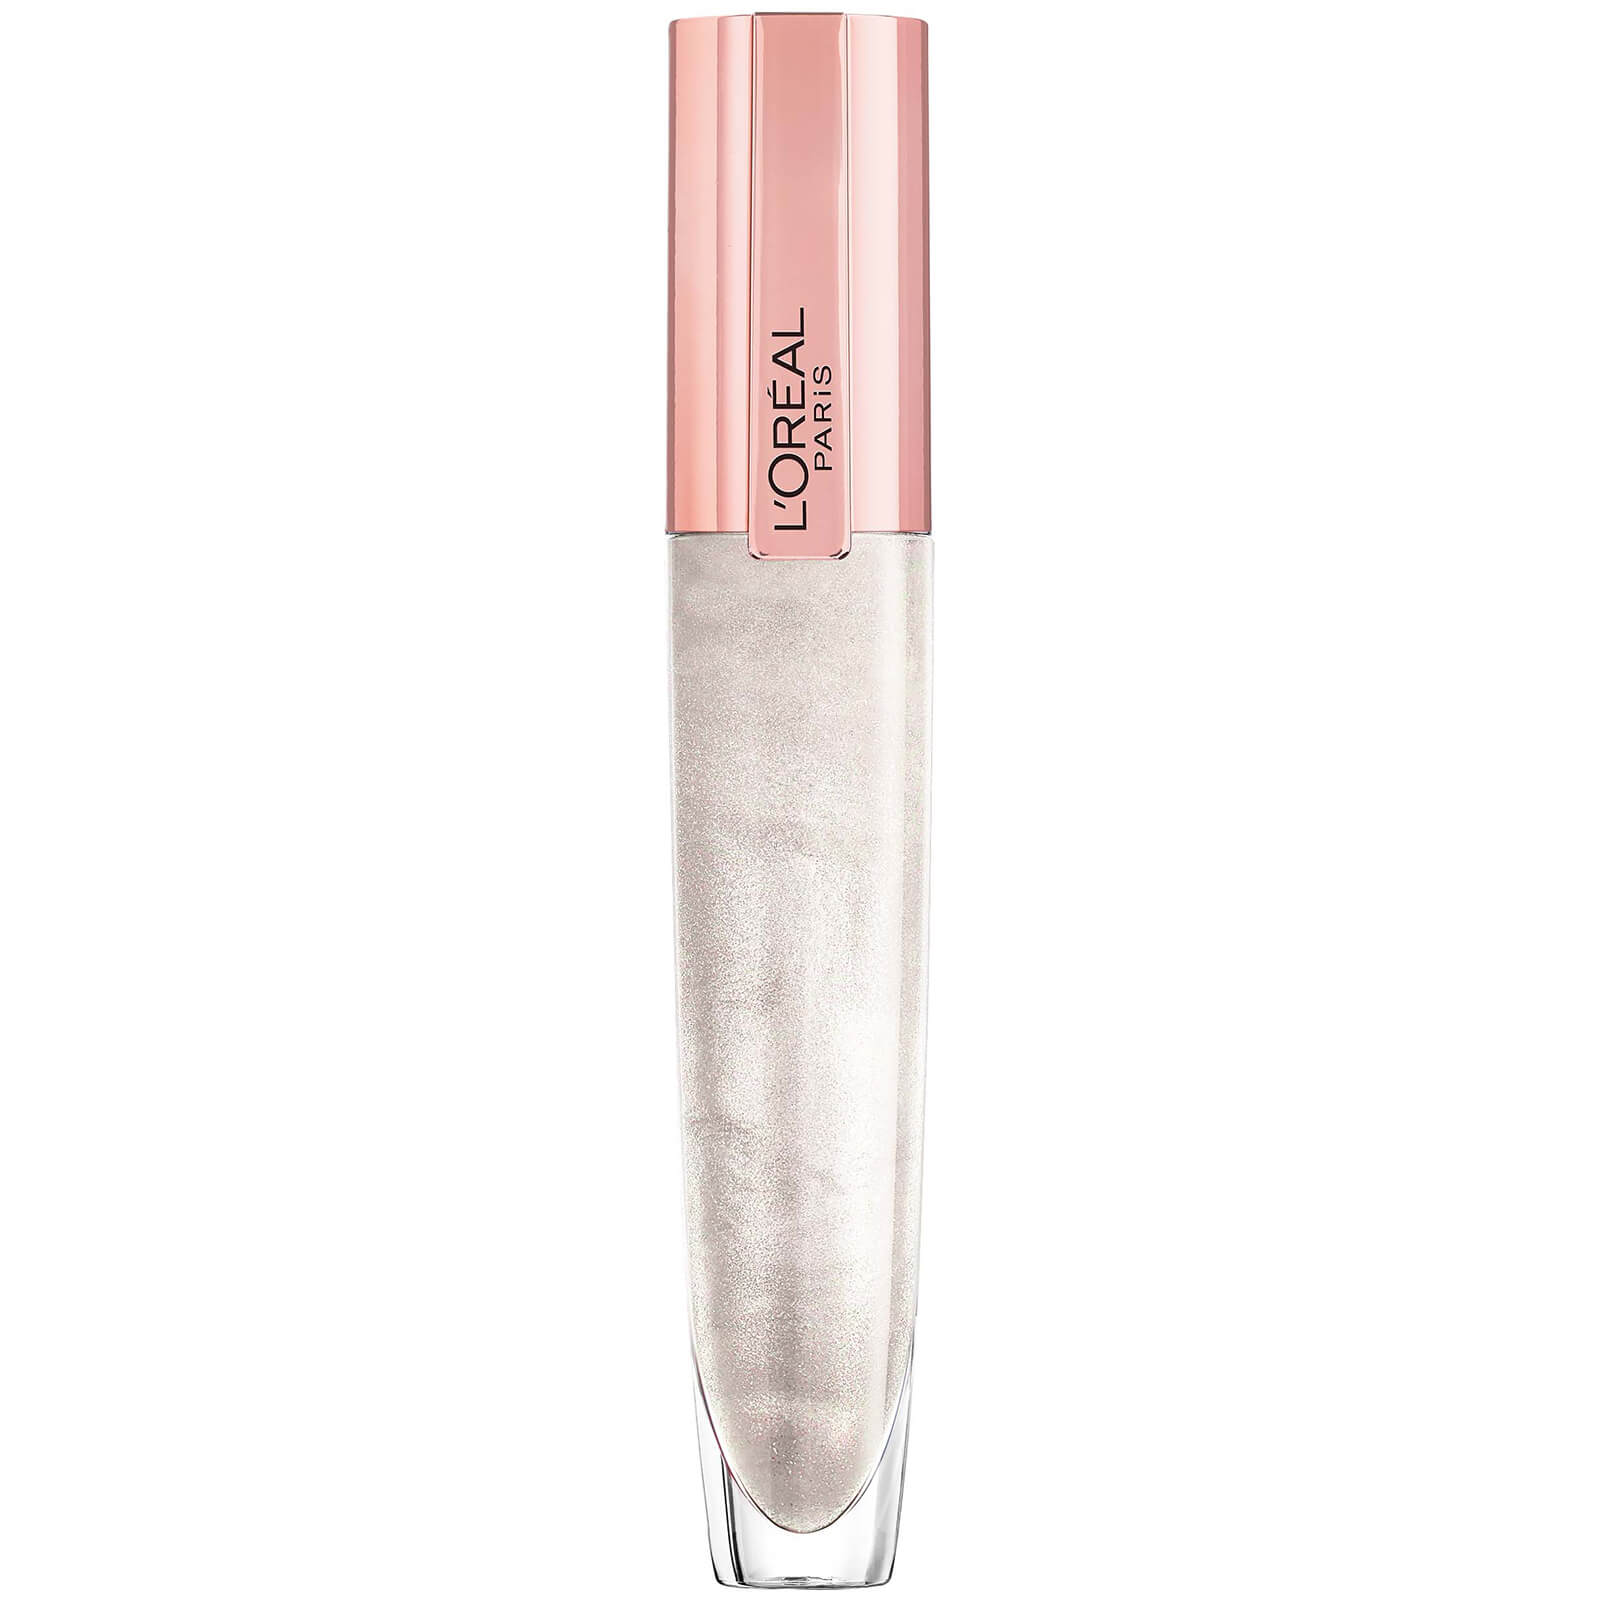 Image of Lip Gloss Rouge Signature Plumping L'Oreal Paris 7ml (varie tonalità) - 400 I Maximize